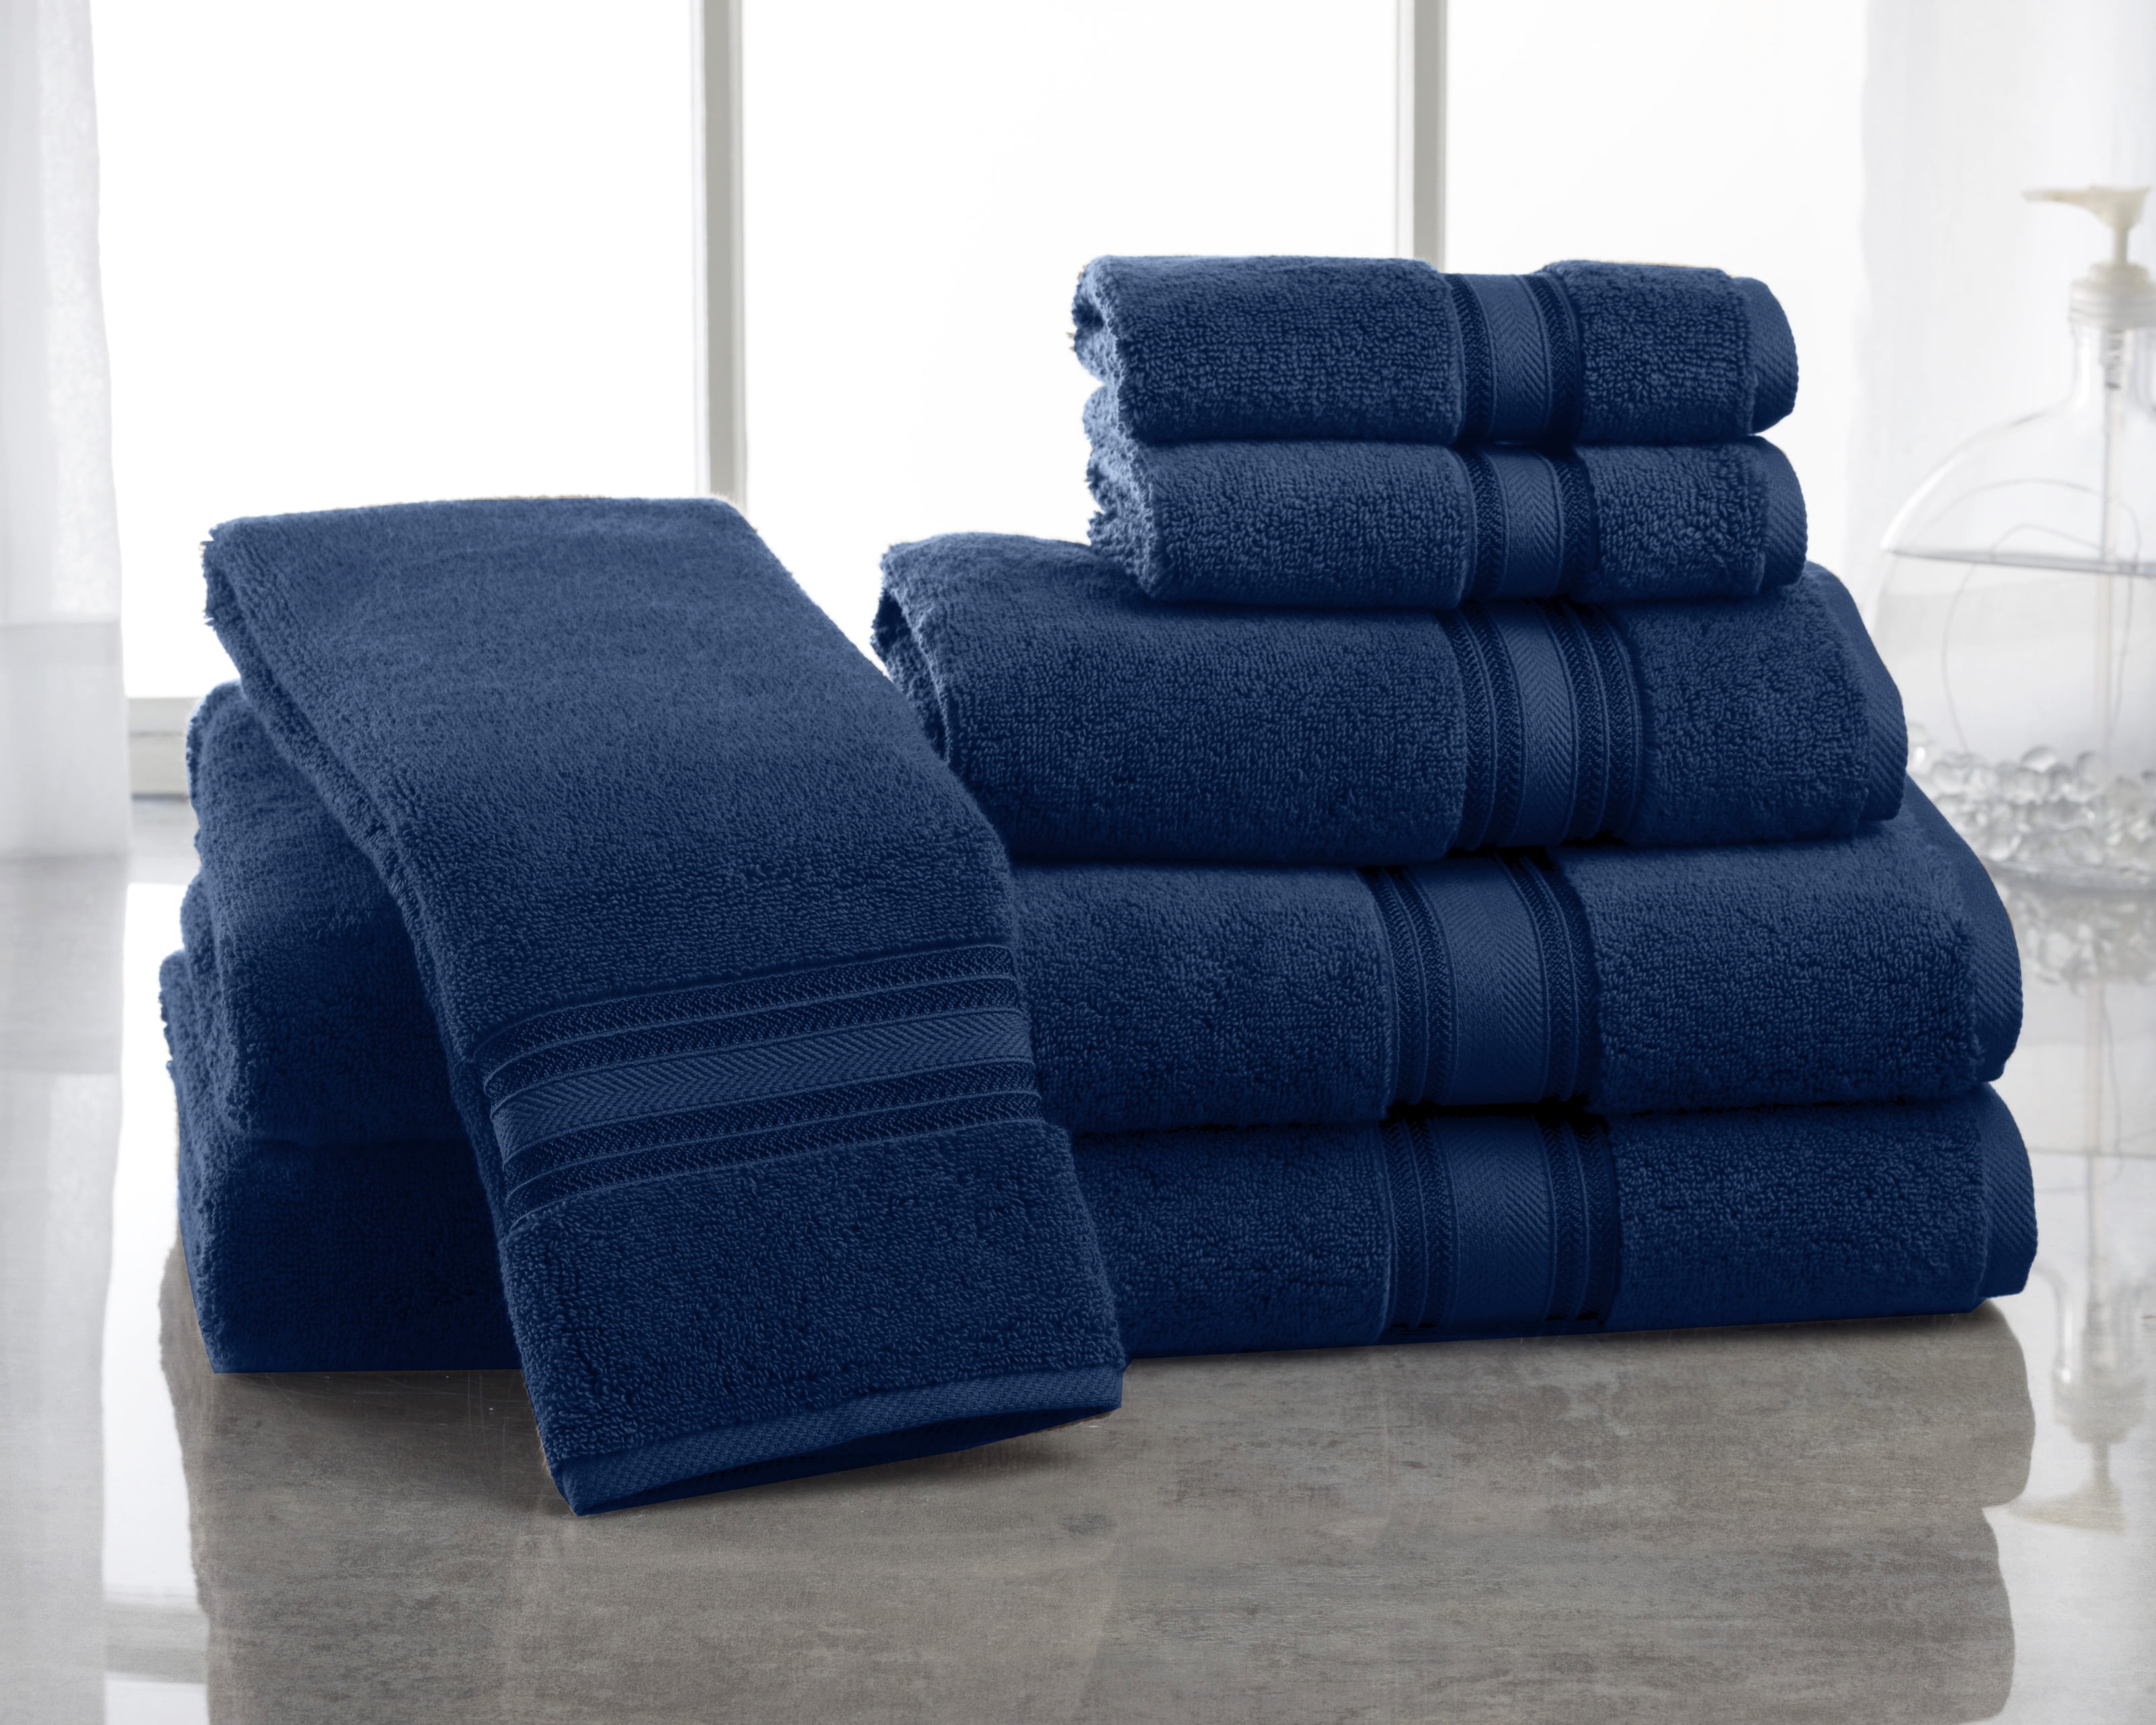 Lane Linen Bath Sheets - 100% Cotton Extra Large Bath Towels, 4 Piece Bath Sheet Set, Zero Twist, Quick Dry, Soft Shower Towels, Absorbent Bathroom